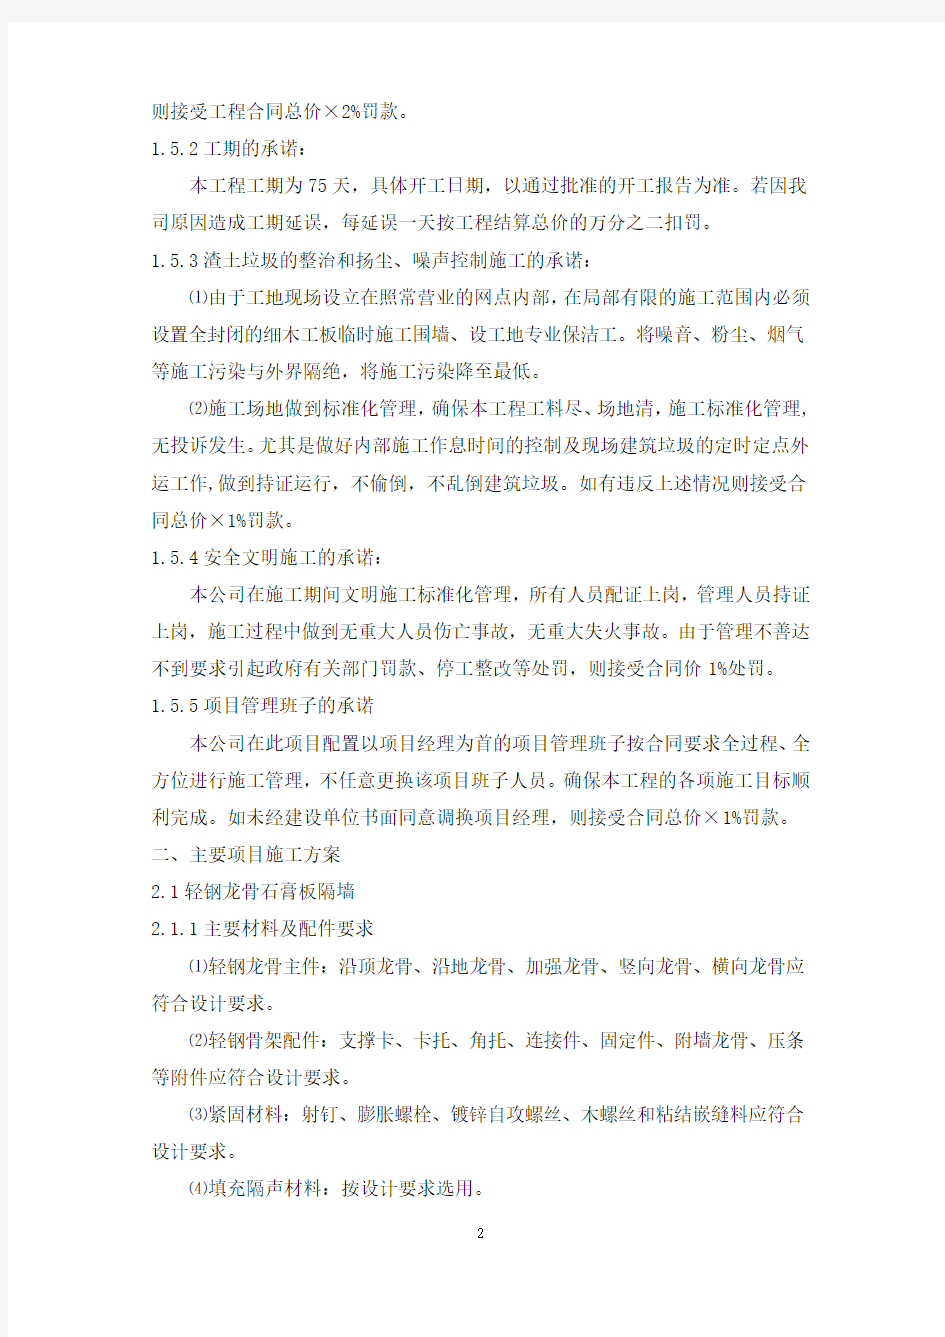 中国银行股份有限公司上海市青浦支行装修项目施工方案 -